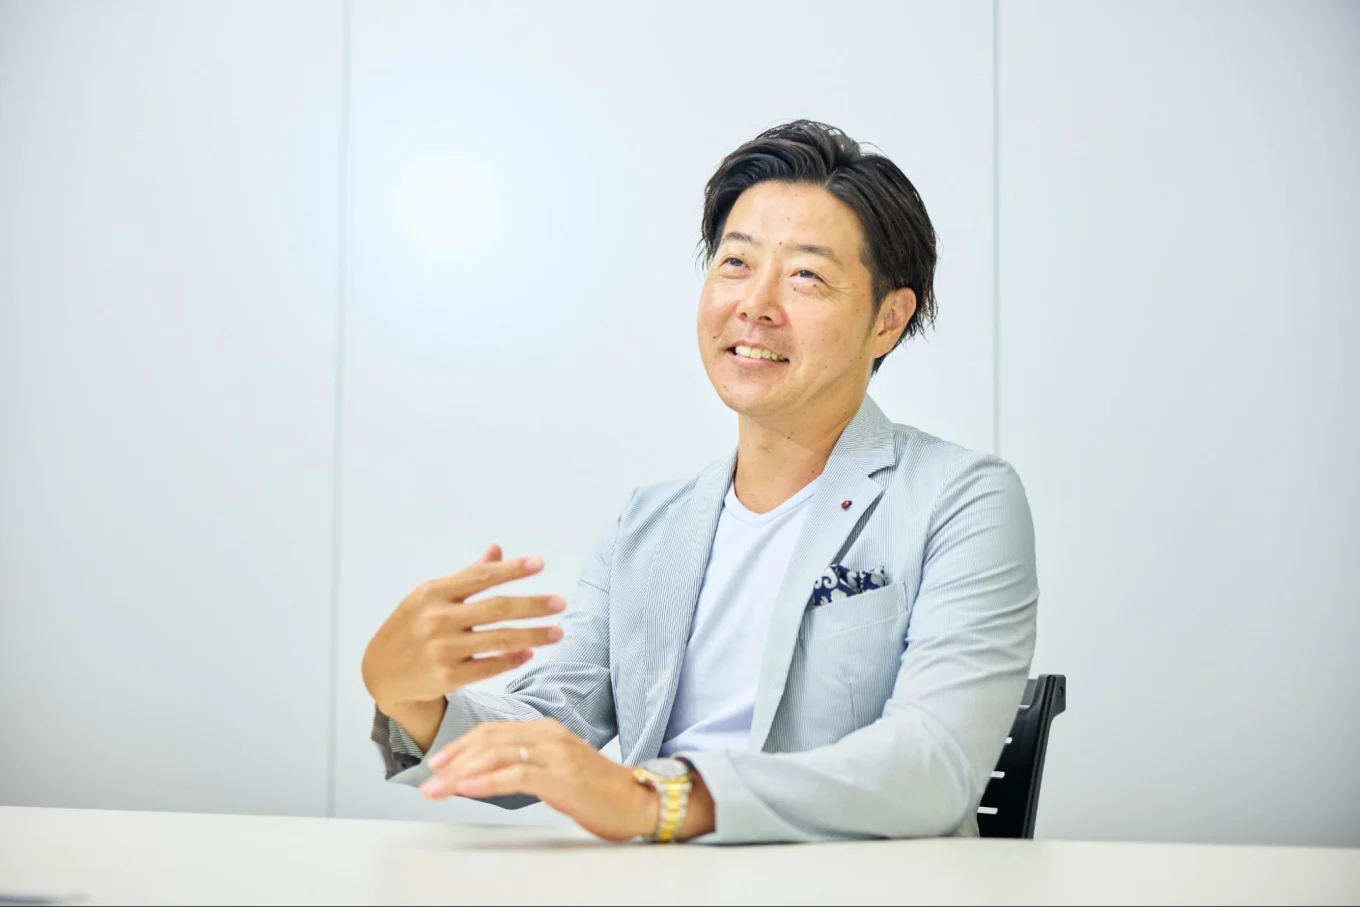 コクー株式会社 代表取締役CEO 入江雄介